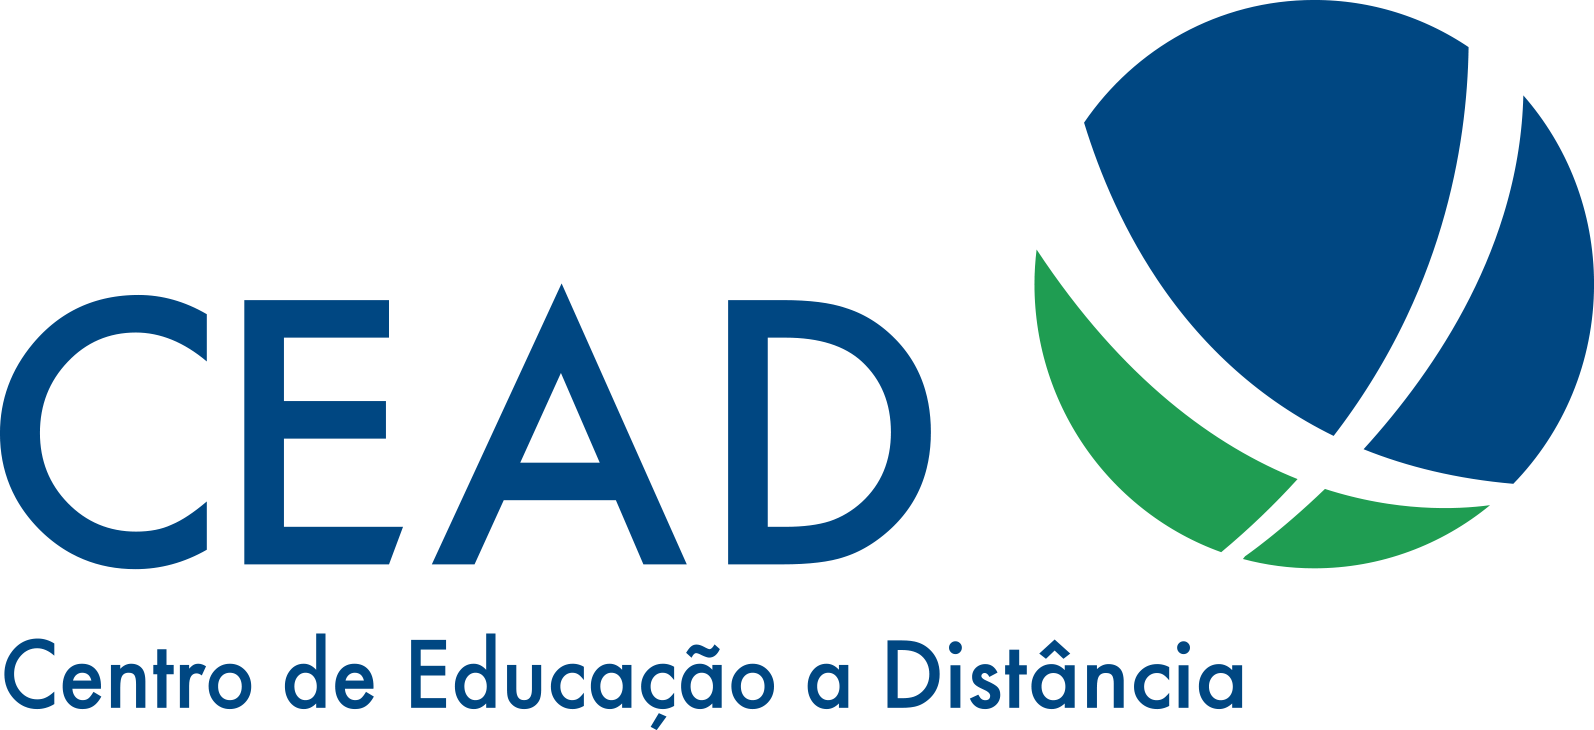 CEAD - Centro de Educação a Distância da UnB